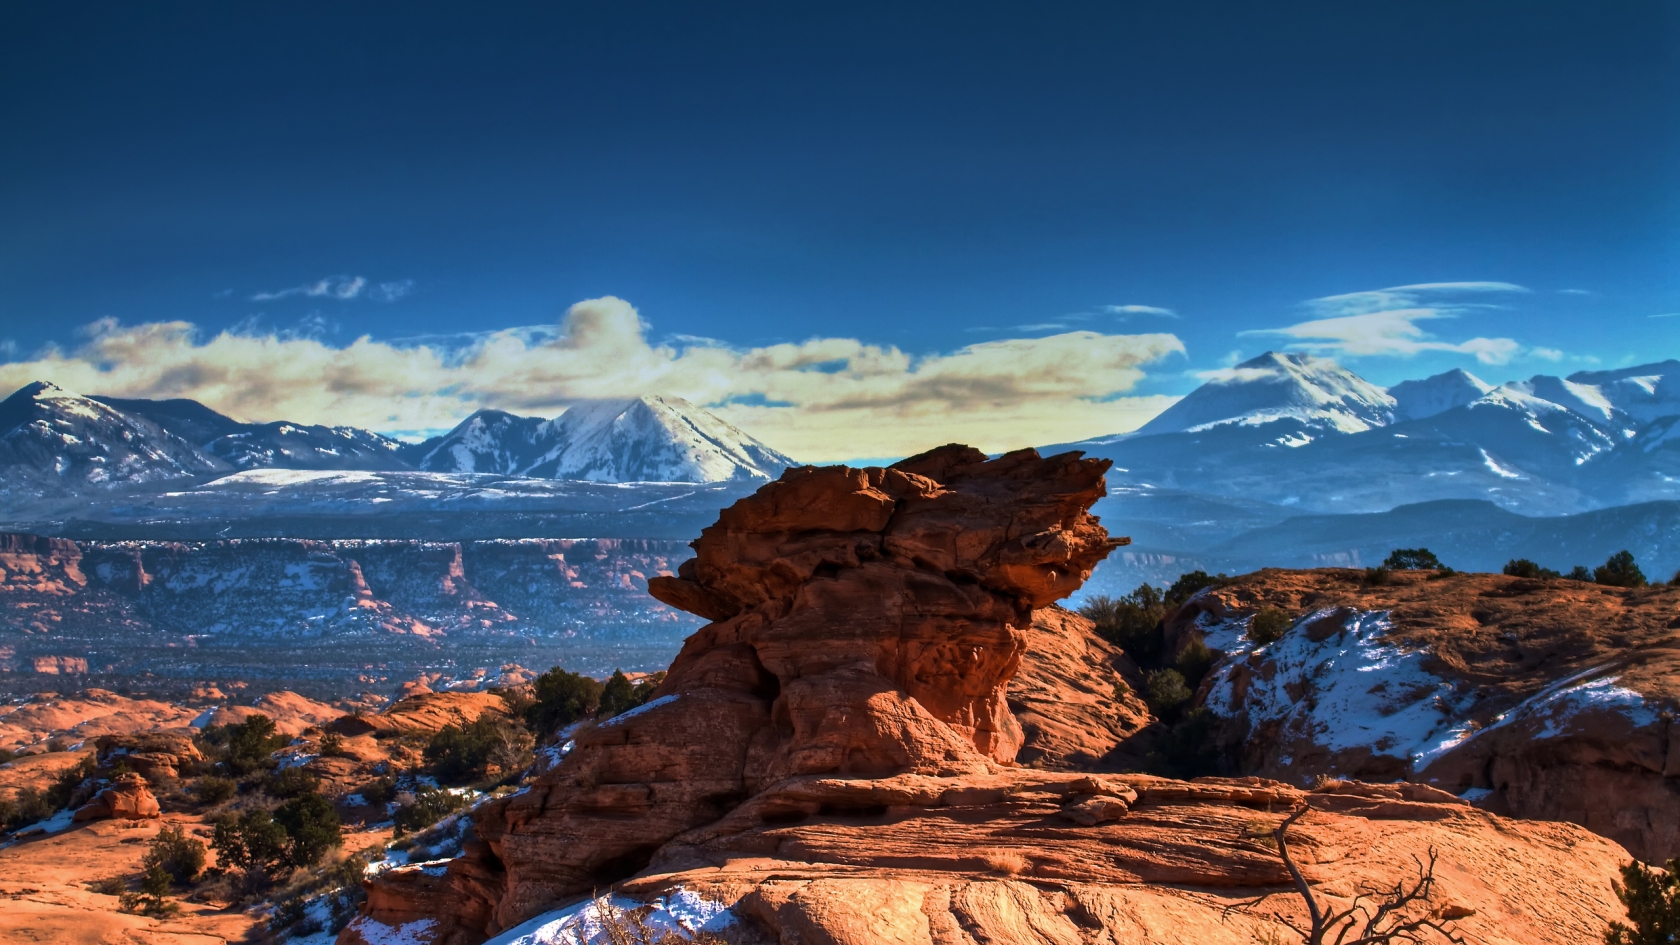 Moab Utah Mountains for 1680 x 945 HDTV resolution